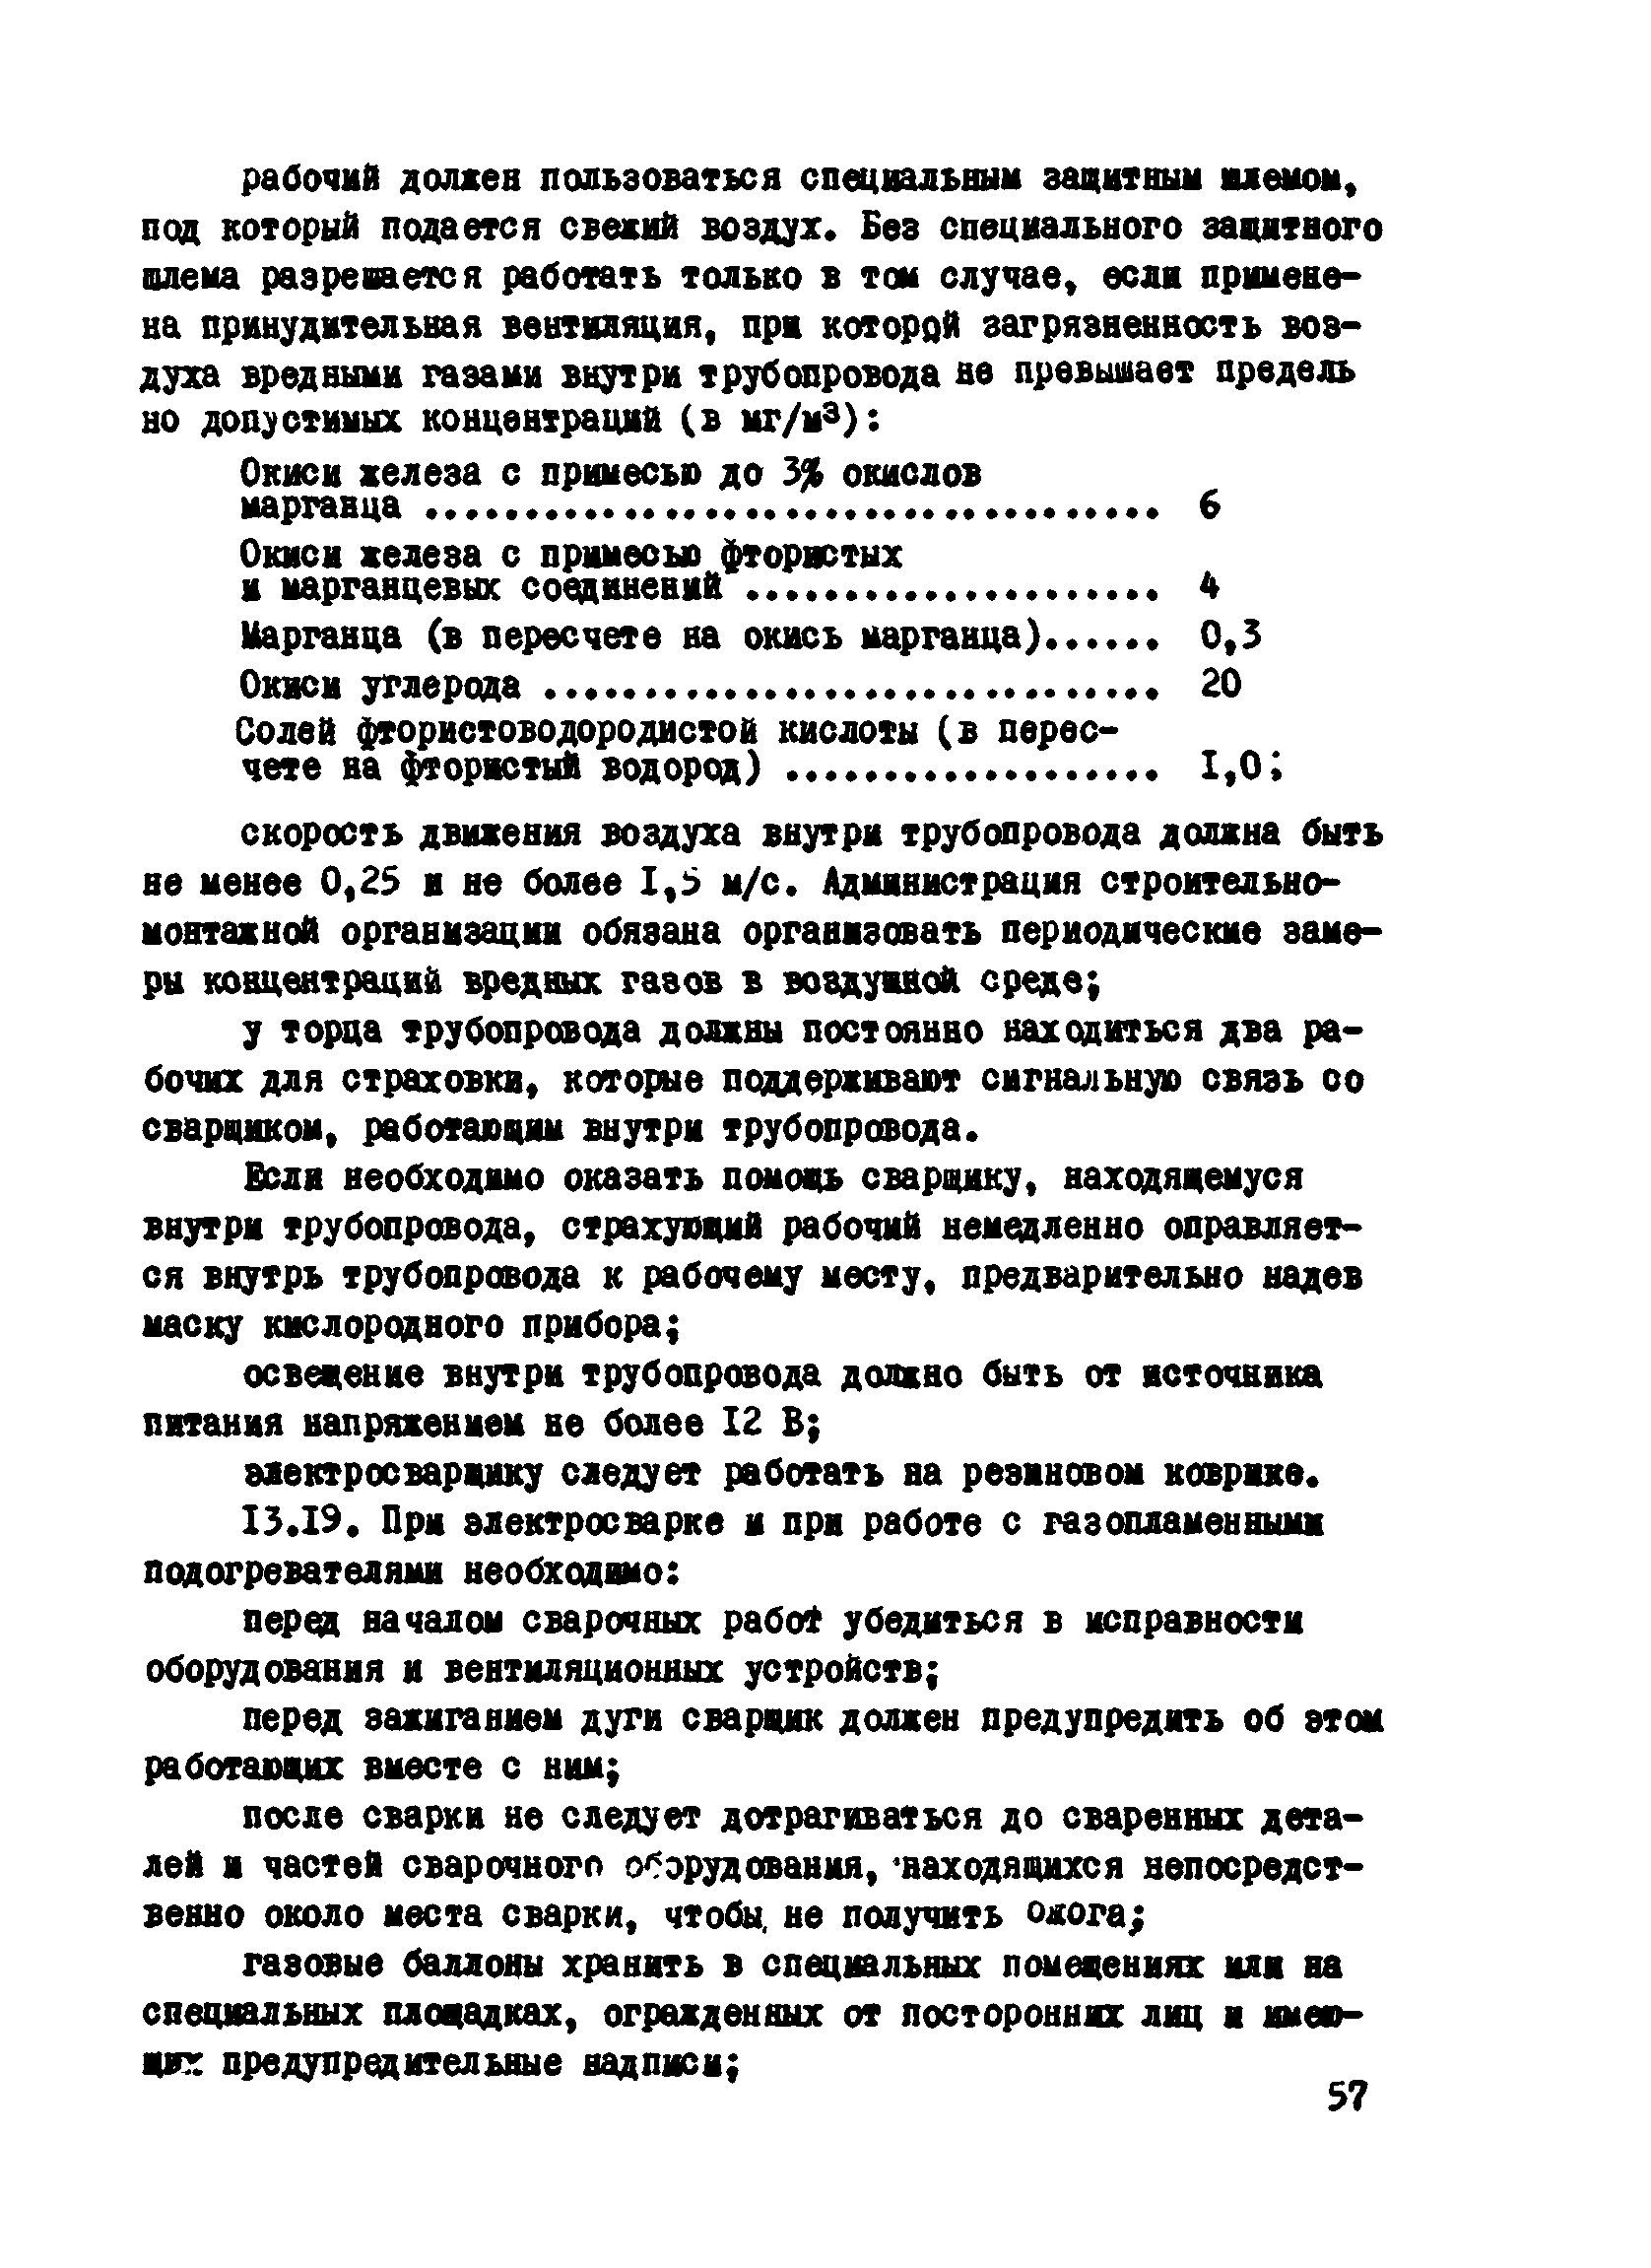 ВСН 2-124-80